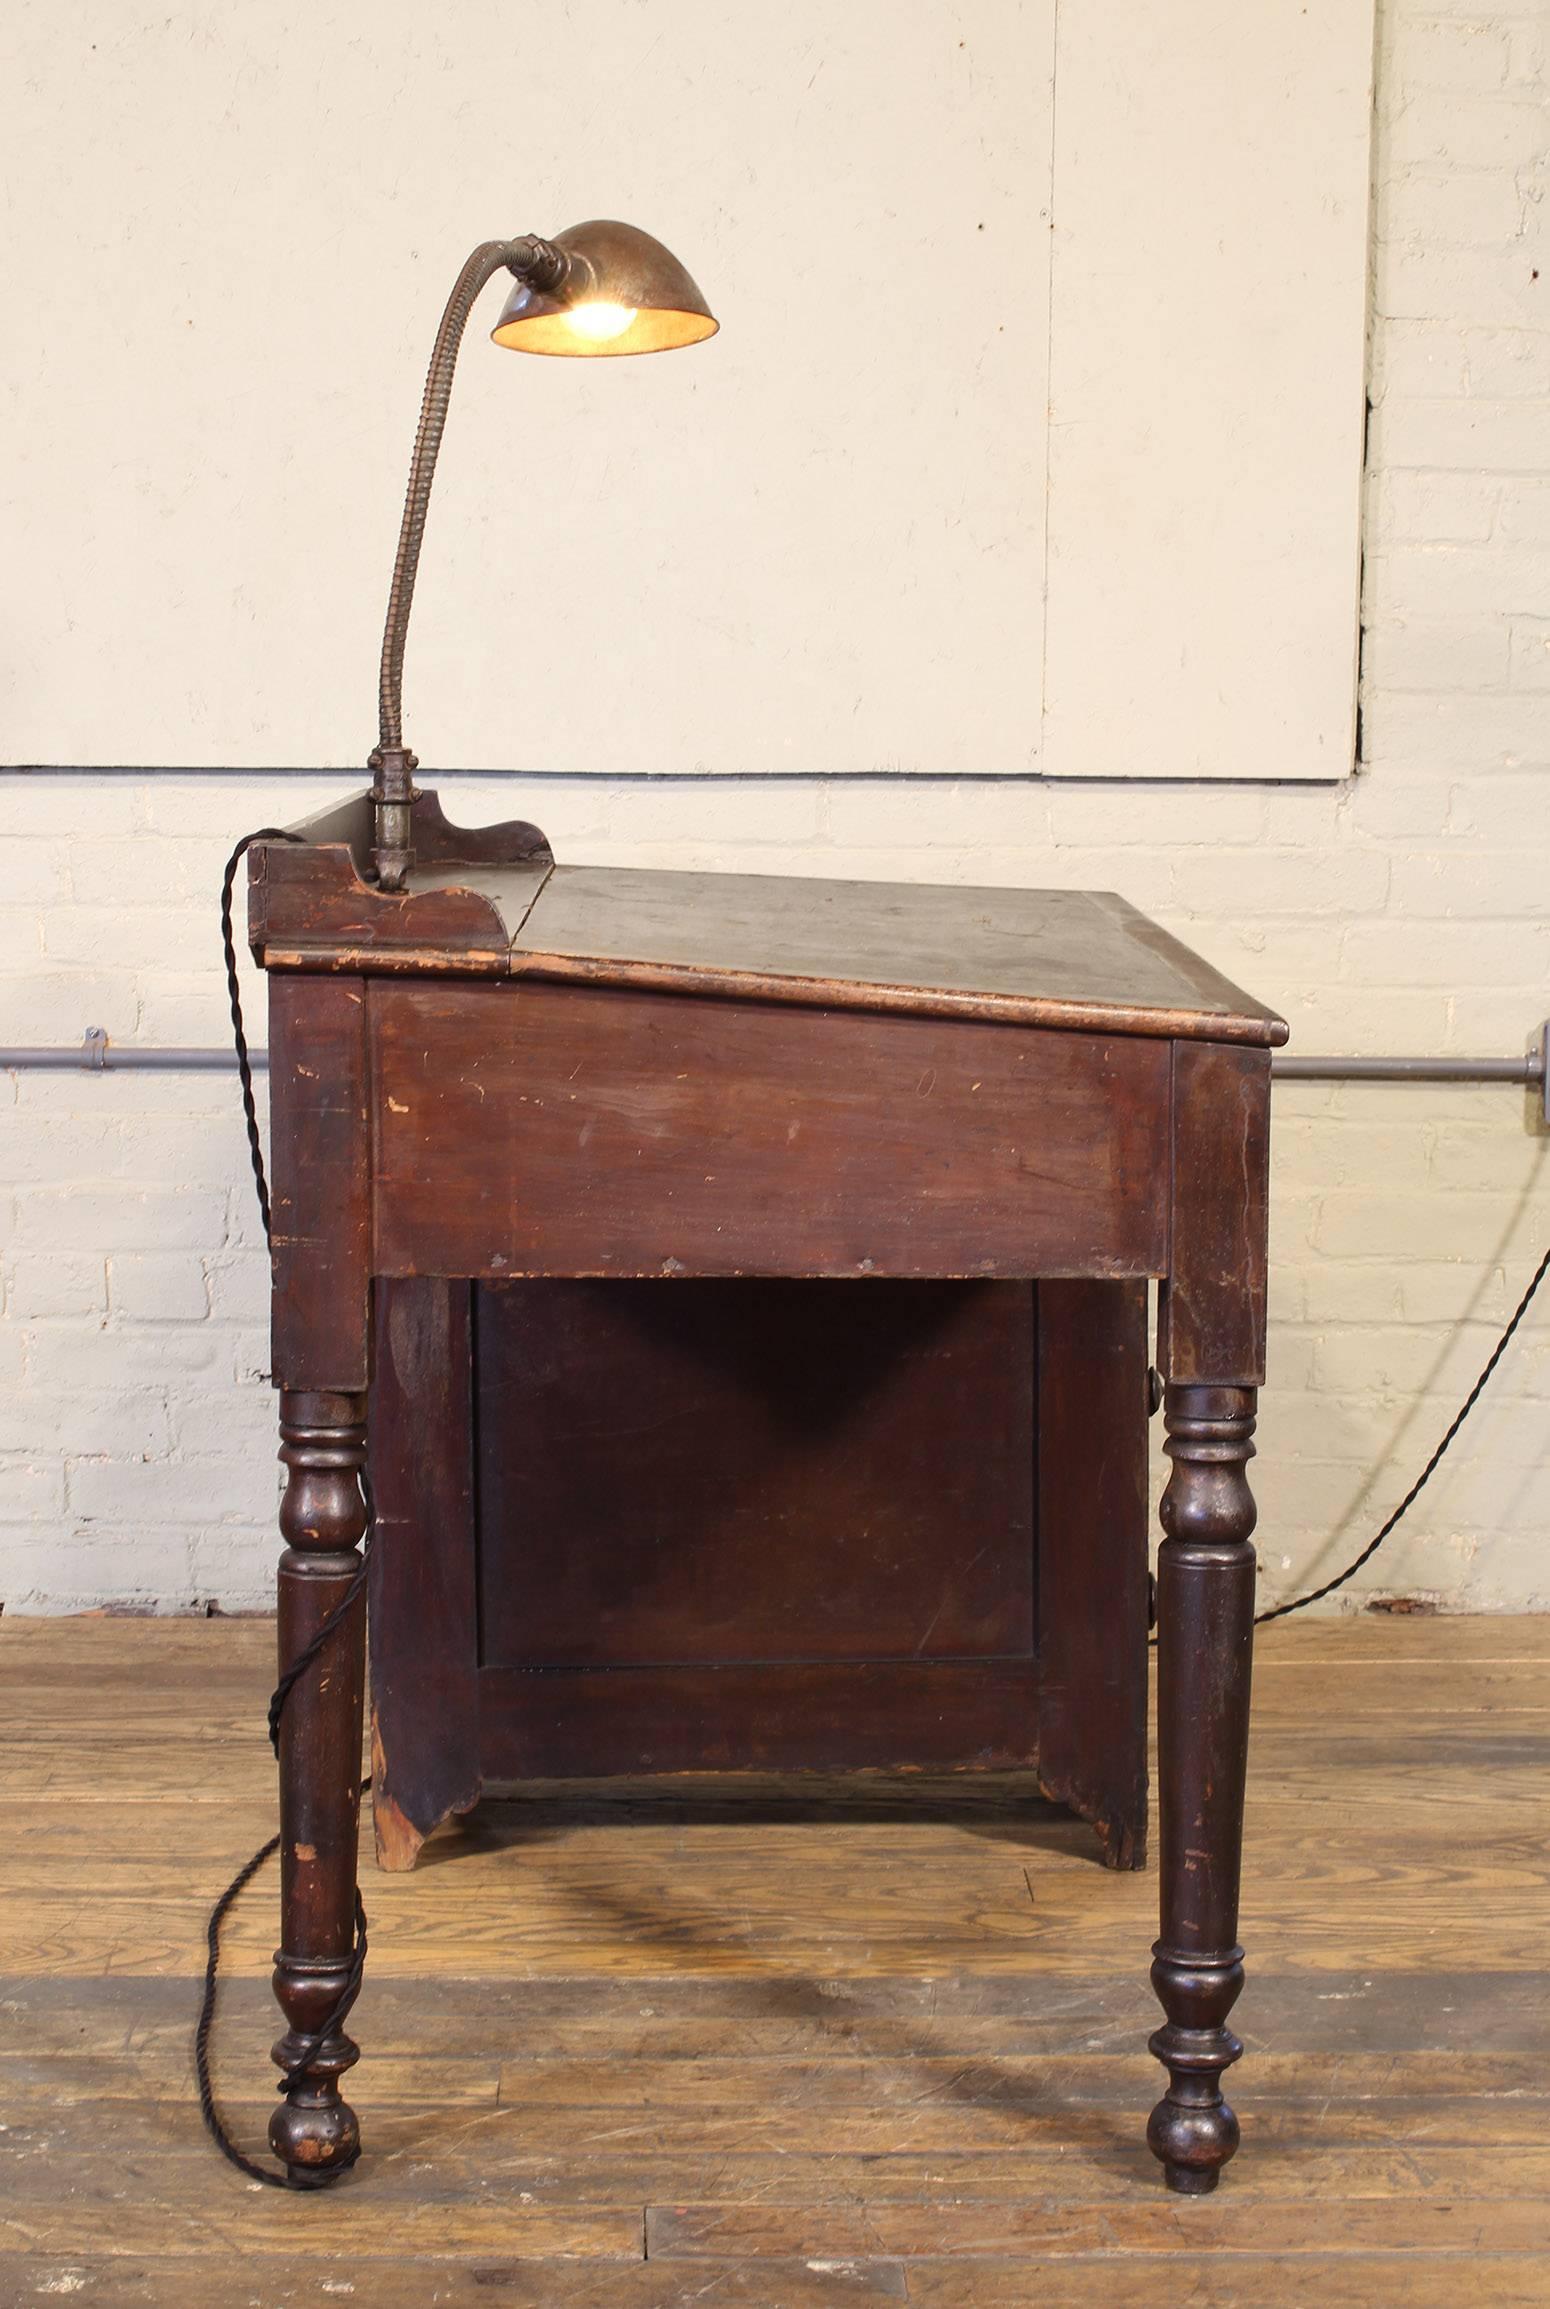 Vintage Industrial Clerk's Desk Workbench with Adjustable Goose-Neck Task Light 3